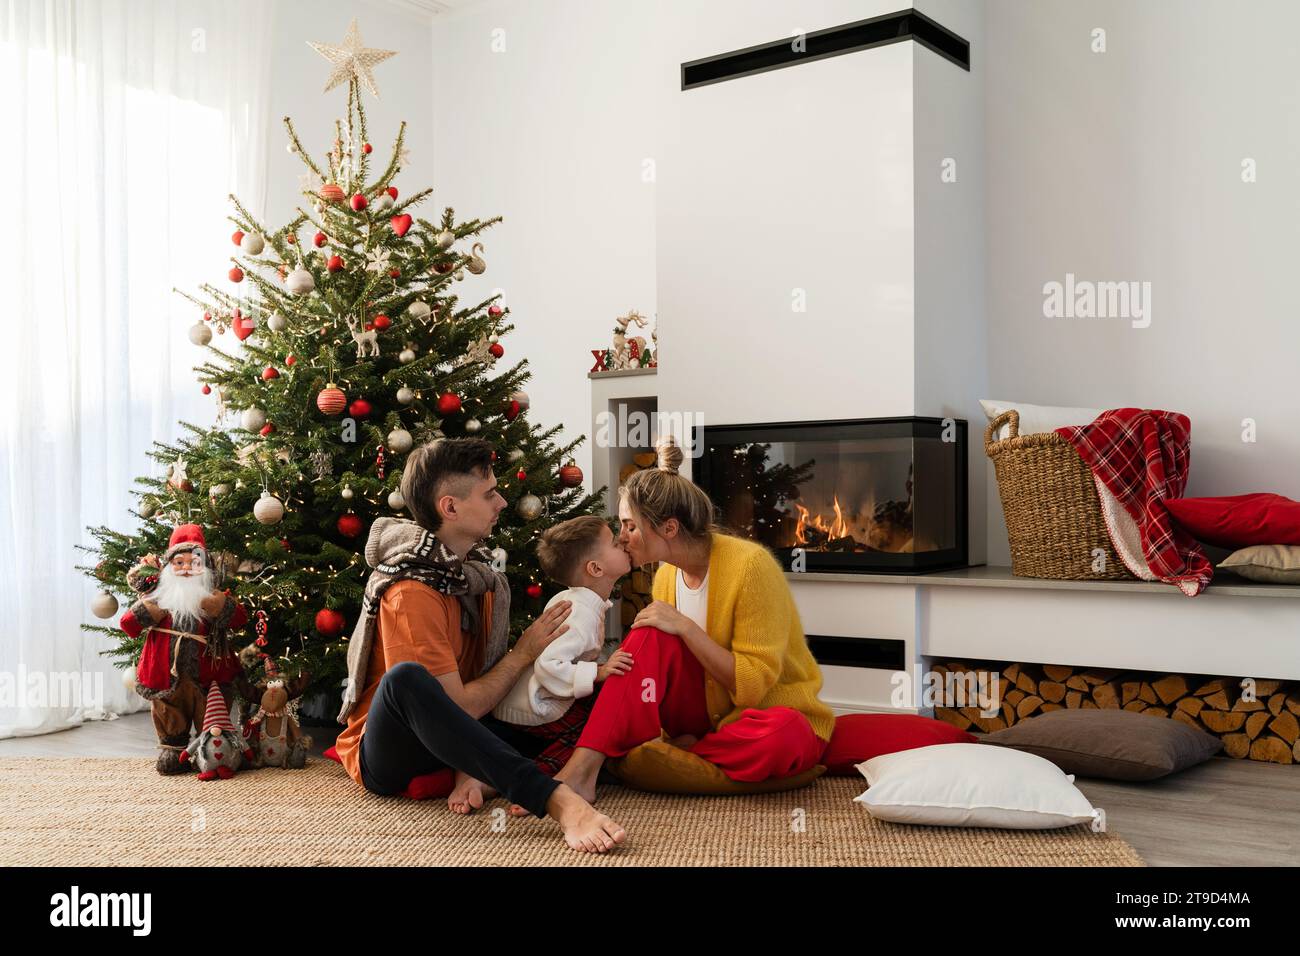 Junge glückliche Familie sitzen neben einem glühenden Kamin in einem gemütlichen Wohnzimmer, geschmückt mit einem Weihnachtsbaum und festlichen Dekorationen. Stockfoto